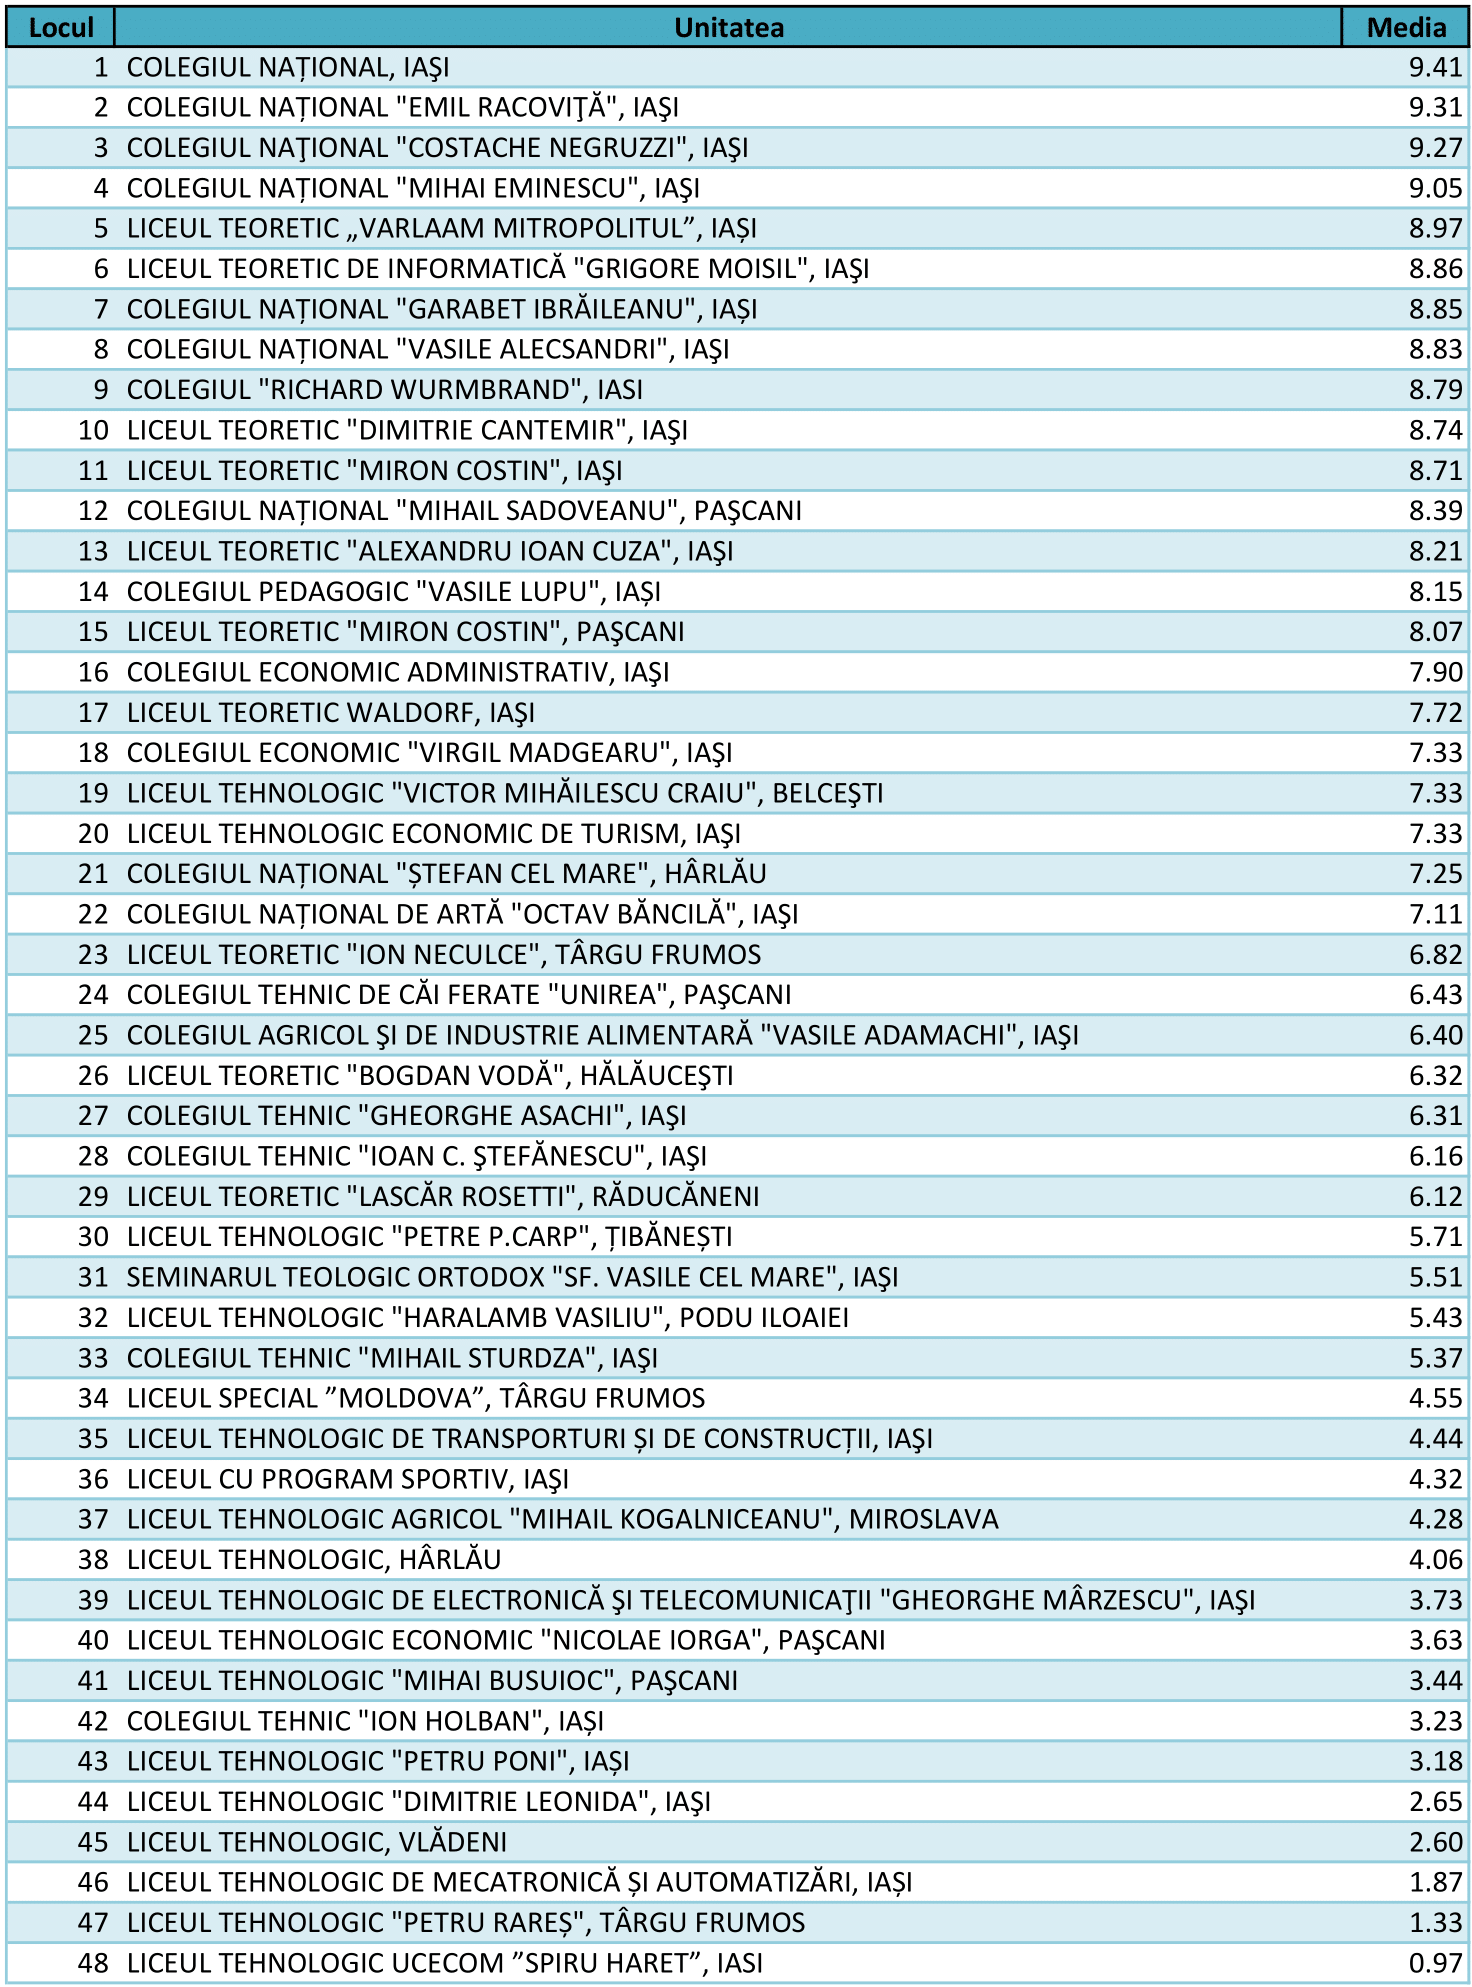 Top 20 schools